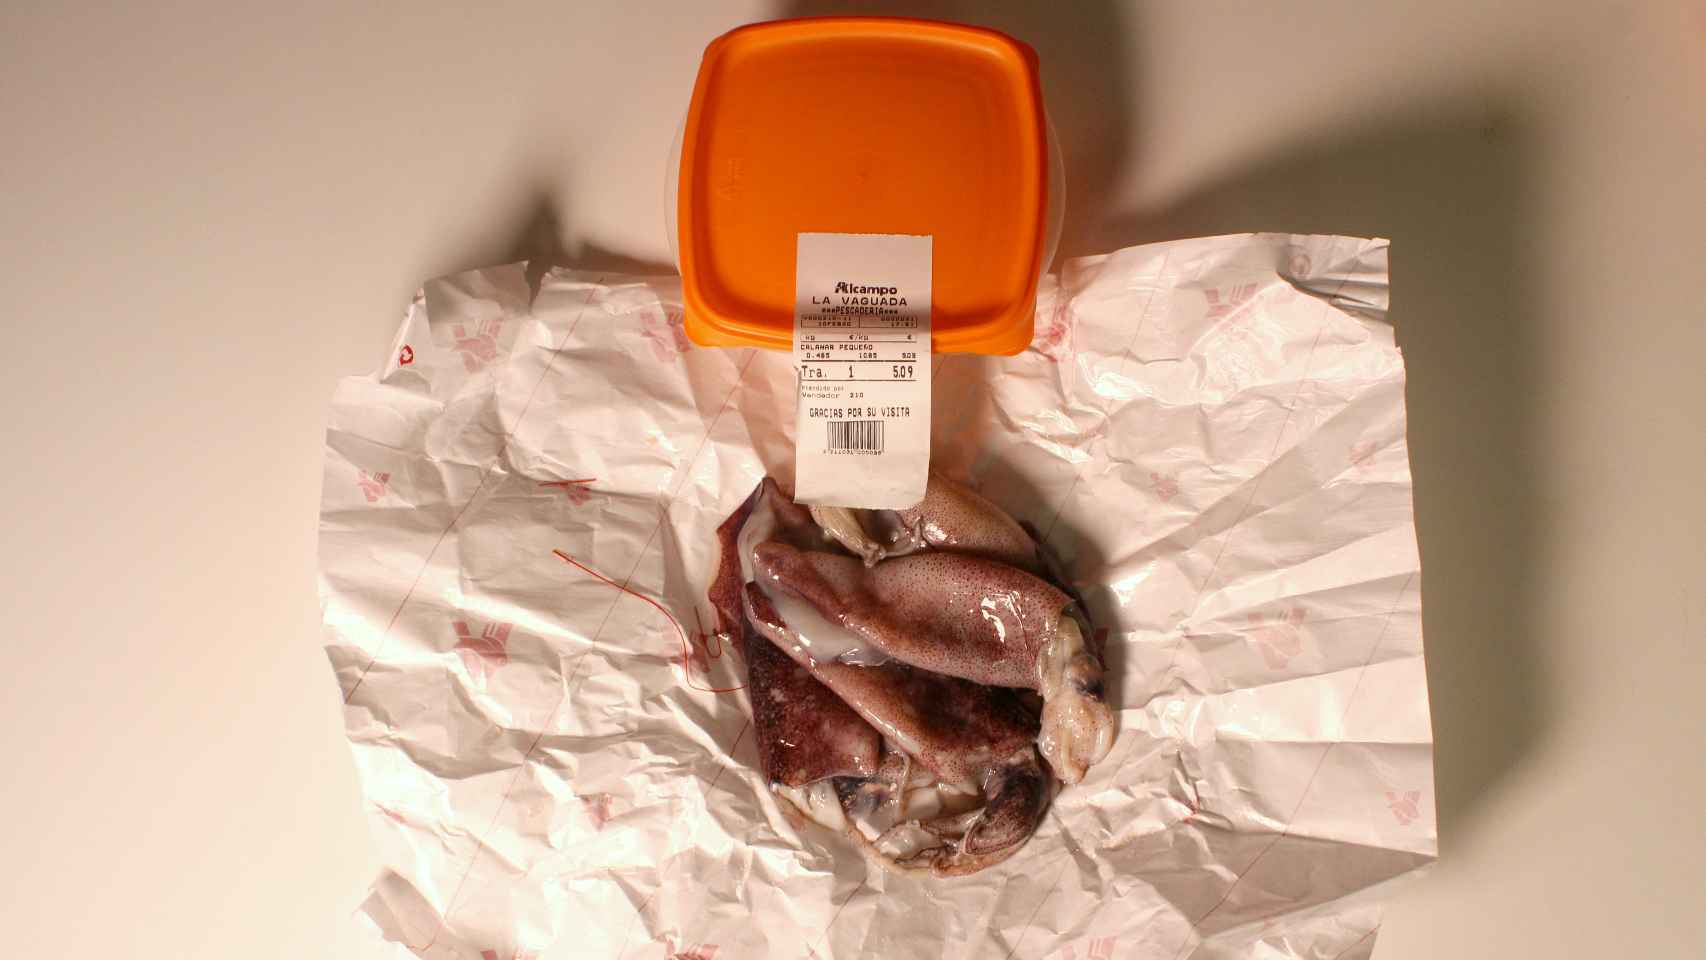 Nos han echado cuatro calamares en el táper envueltos en papel biodegradable.